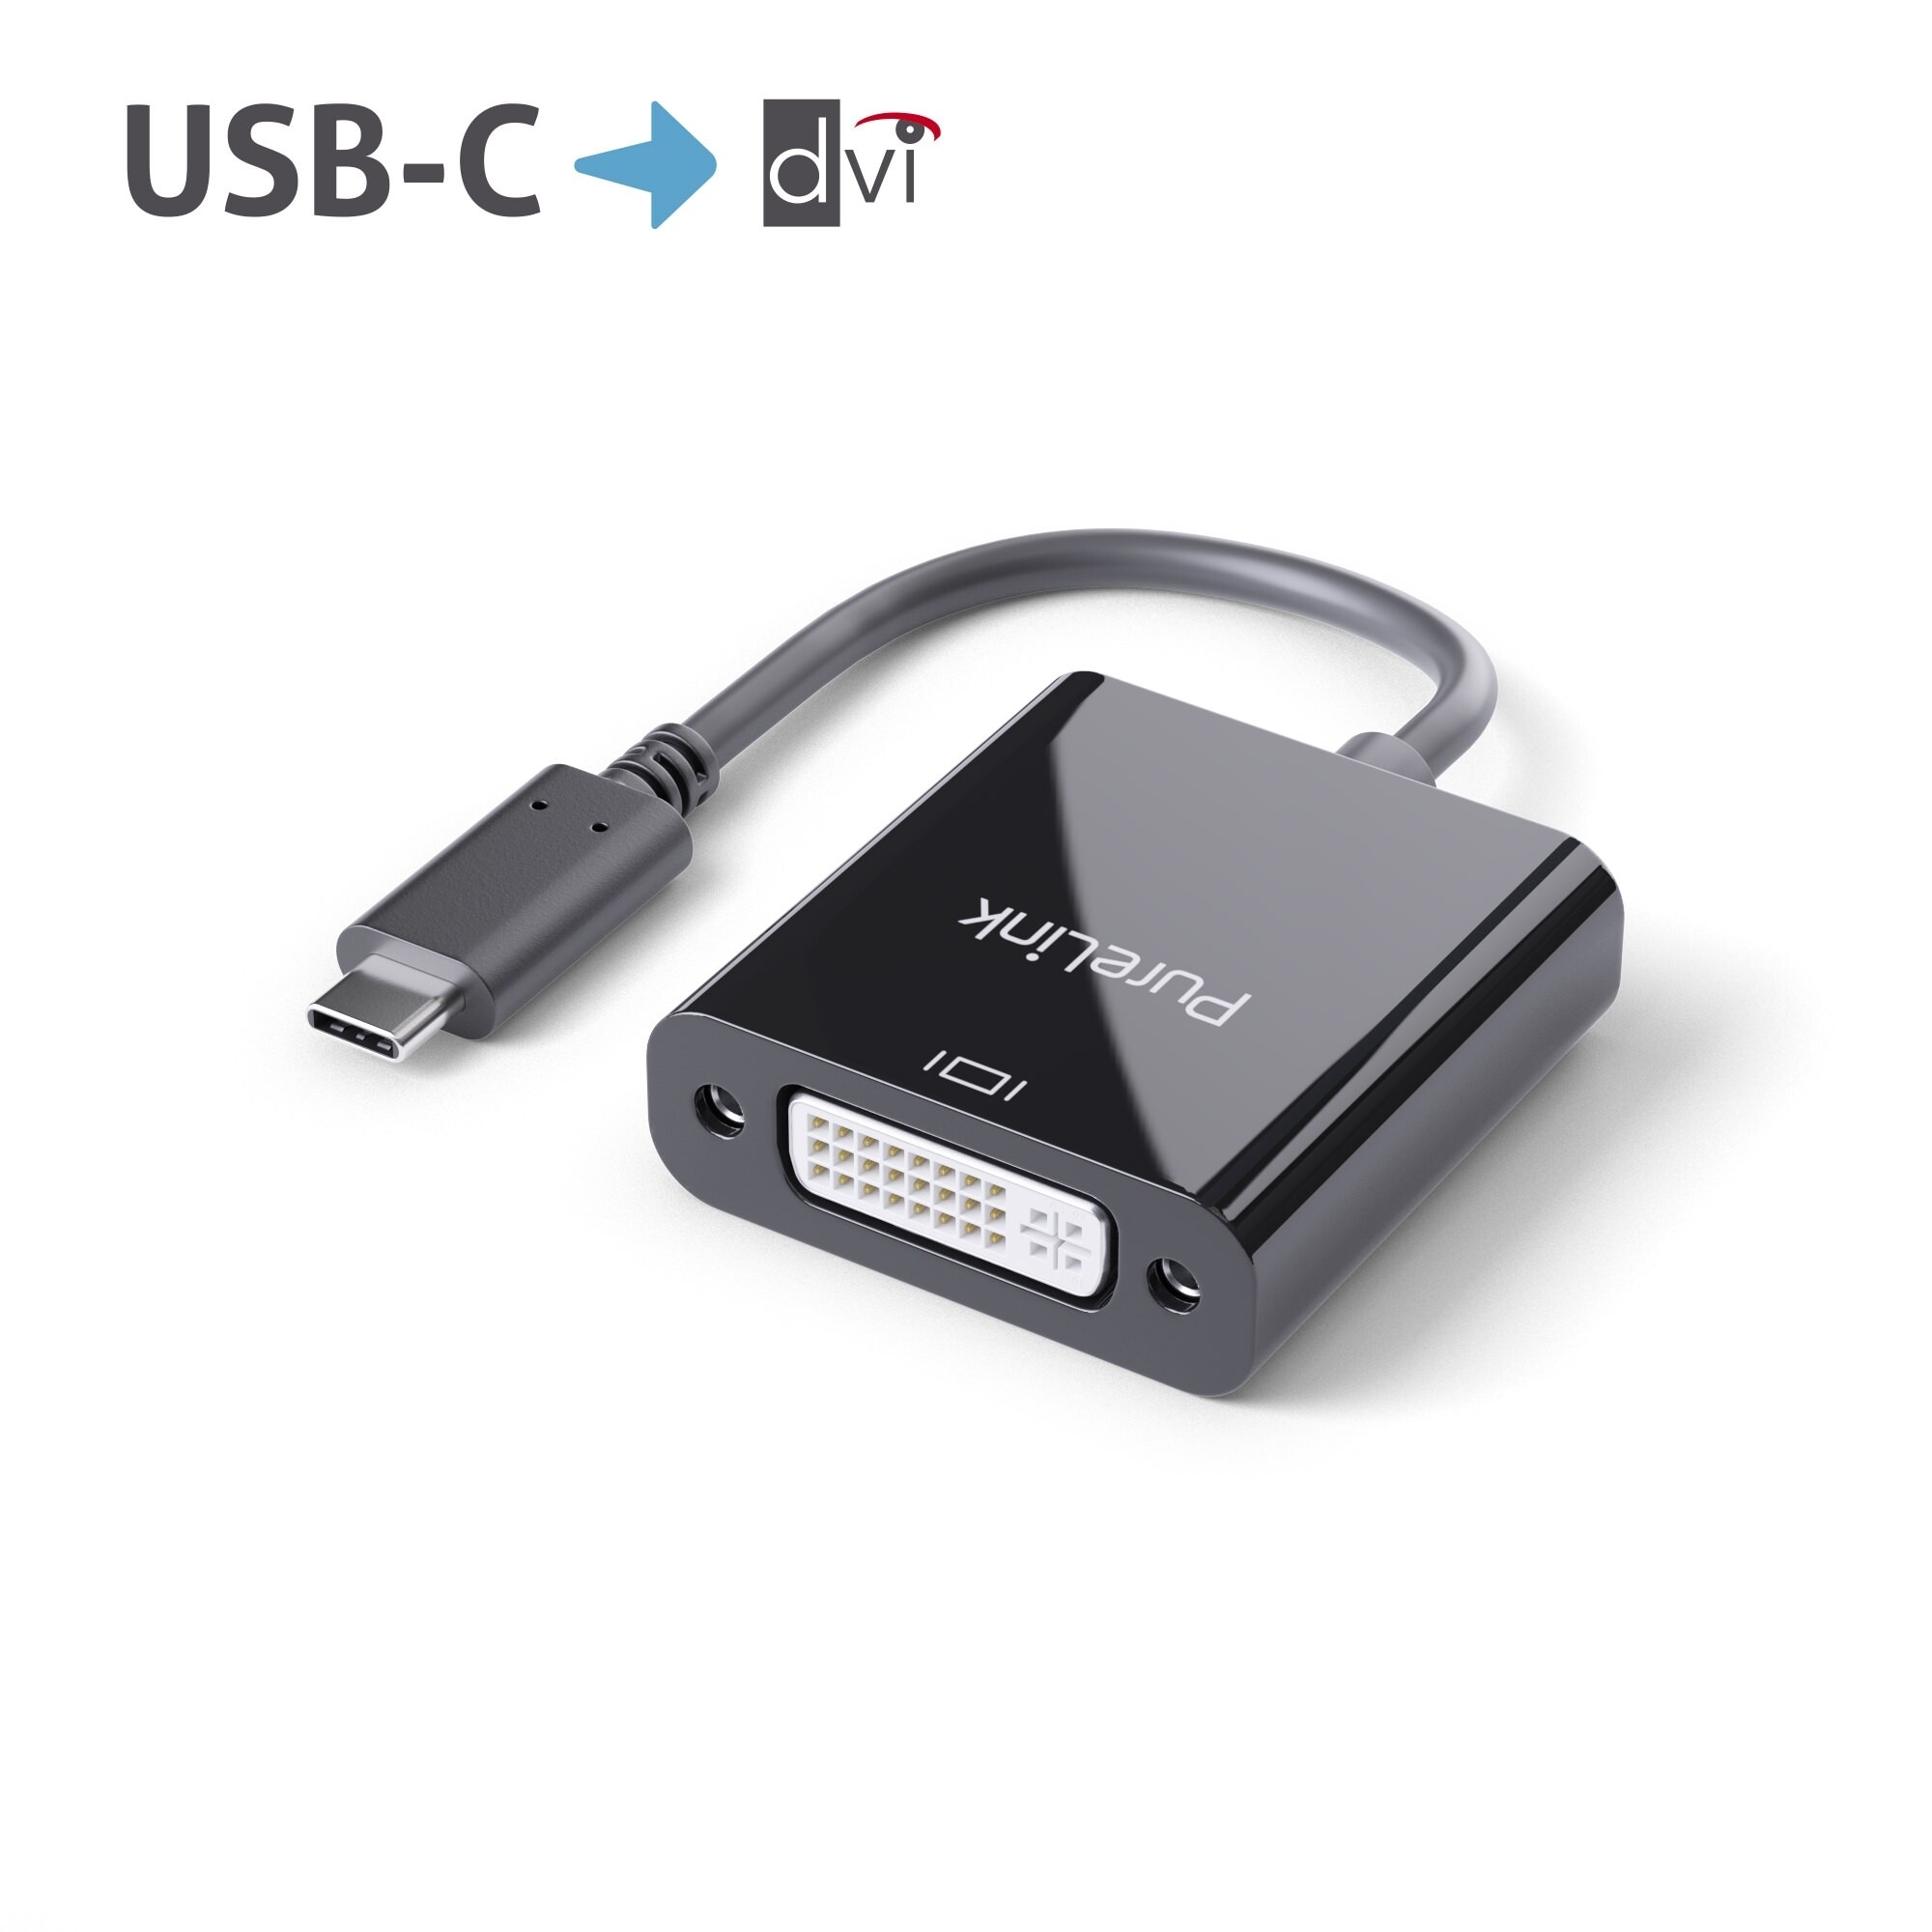 PURELINK iSeries - Videoschnittstellen-Converter - DVI / USB - USB-C (M) bis DVI (W) - 10cm